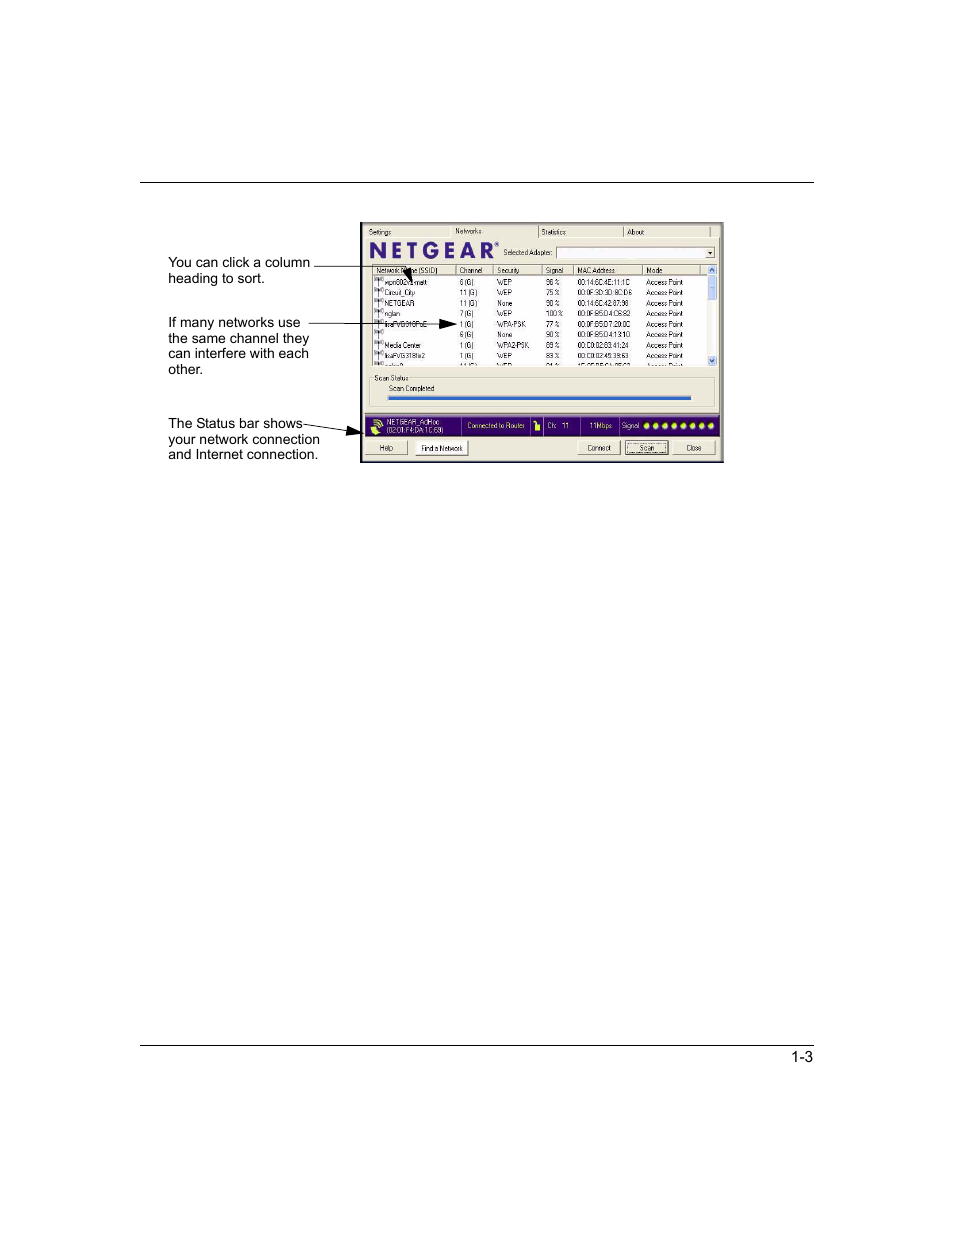 NETGEAR RangeMax Next Wireless Notebook Adapter WN511T User Manual | Page 25 / 52